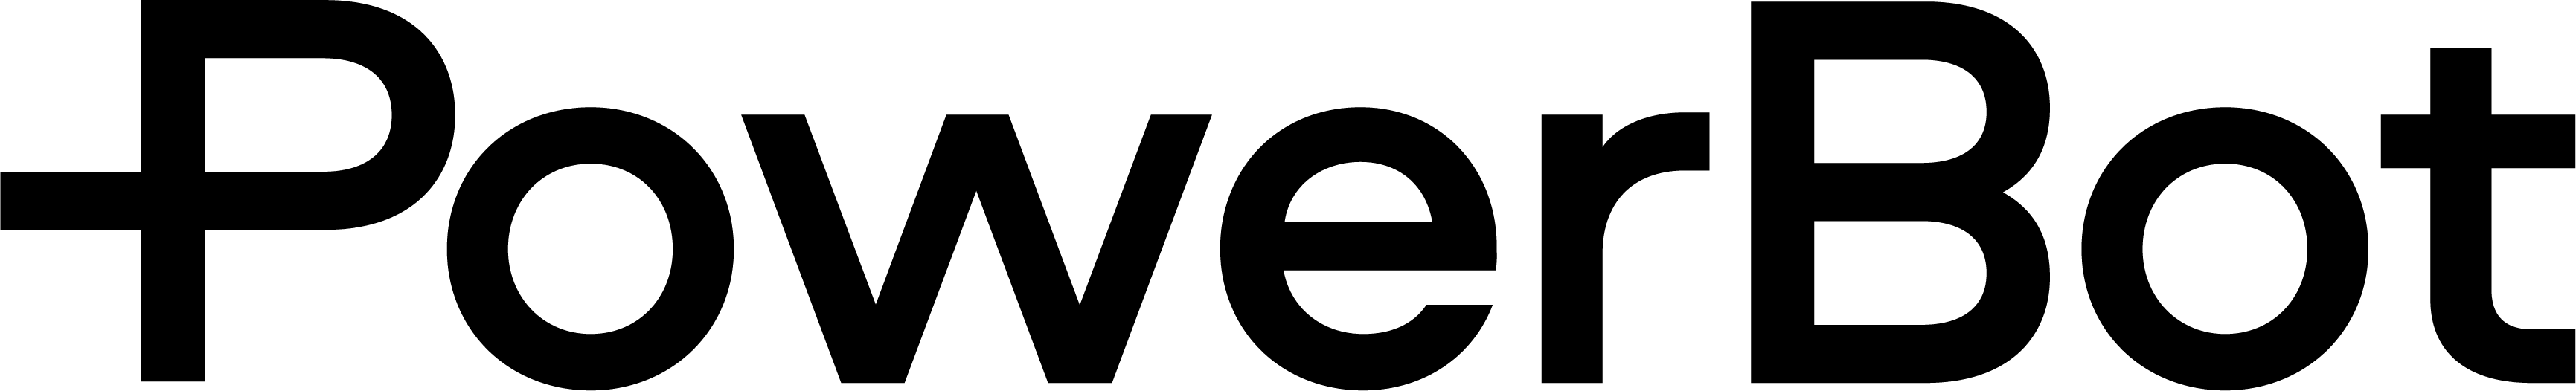 PB-logo-black-RGB